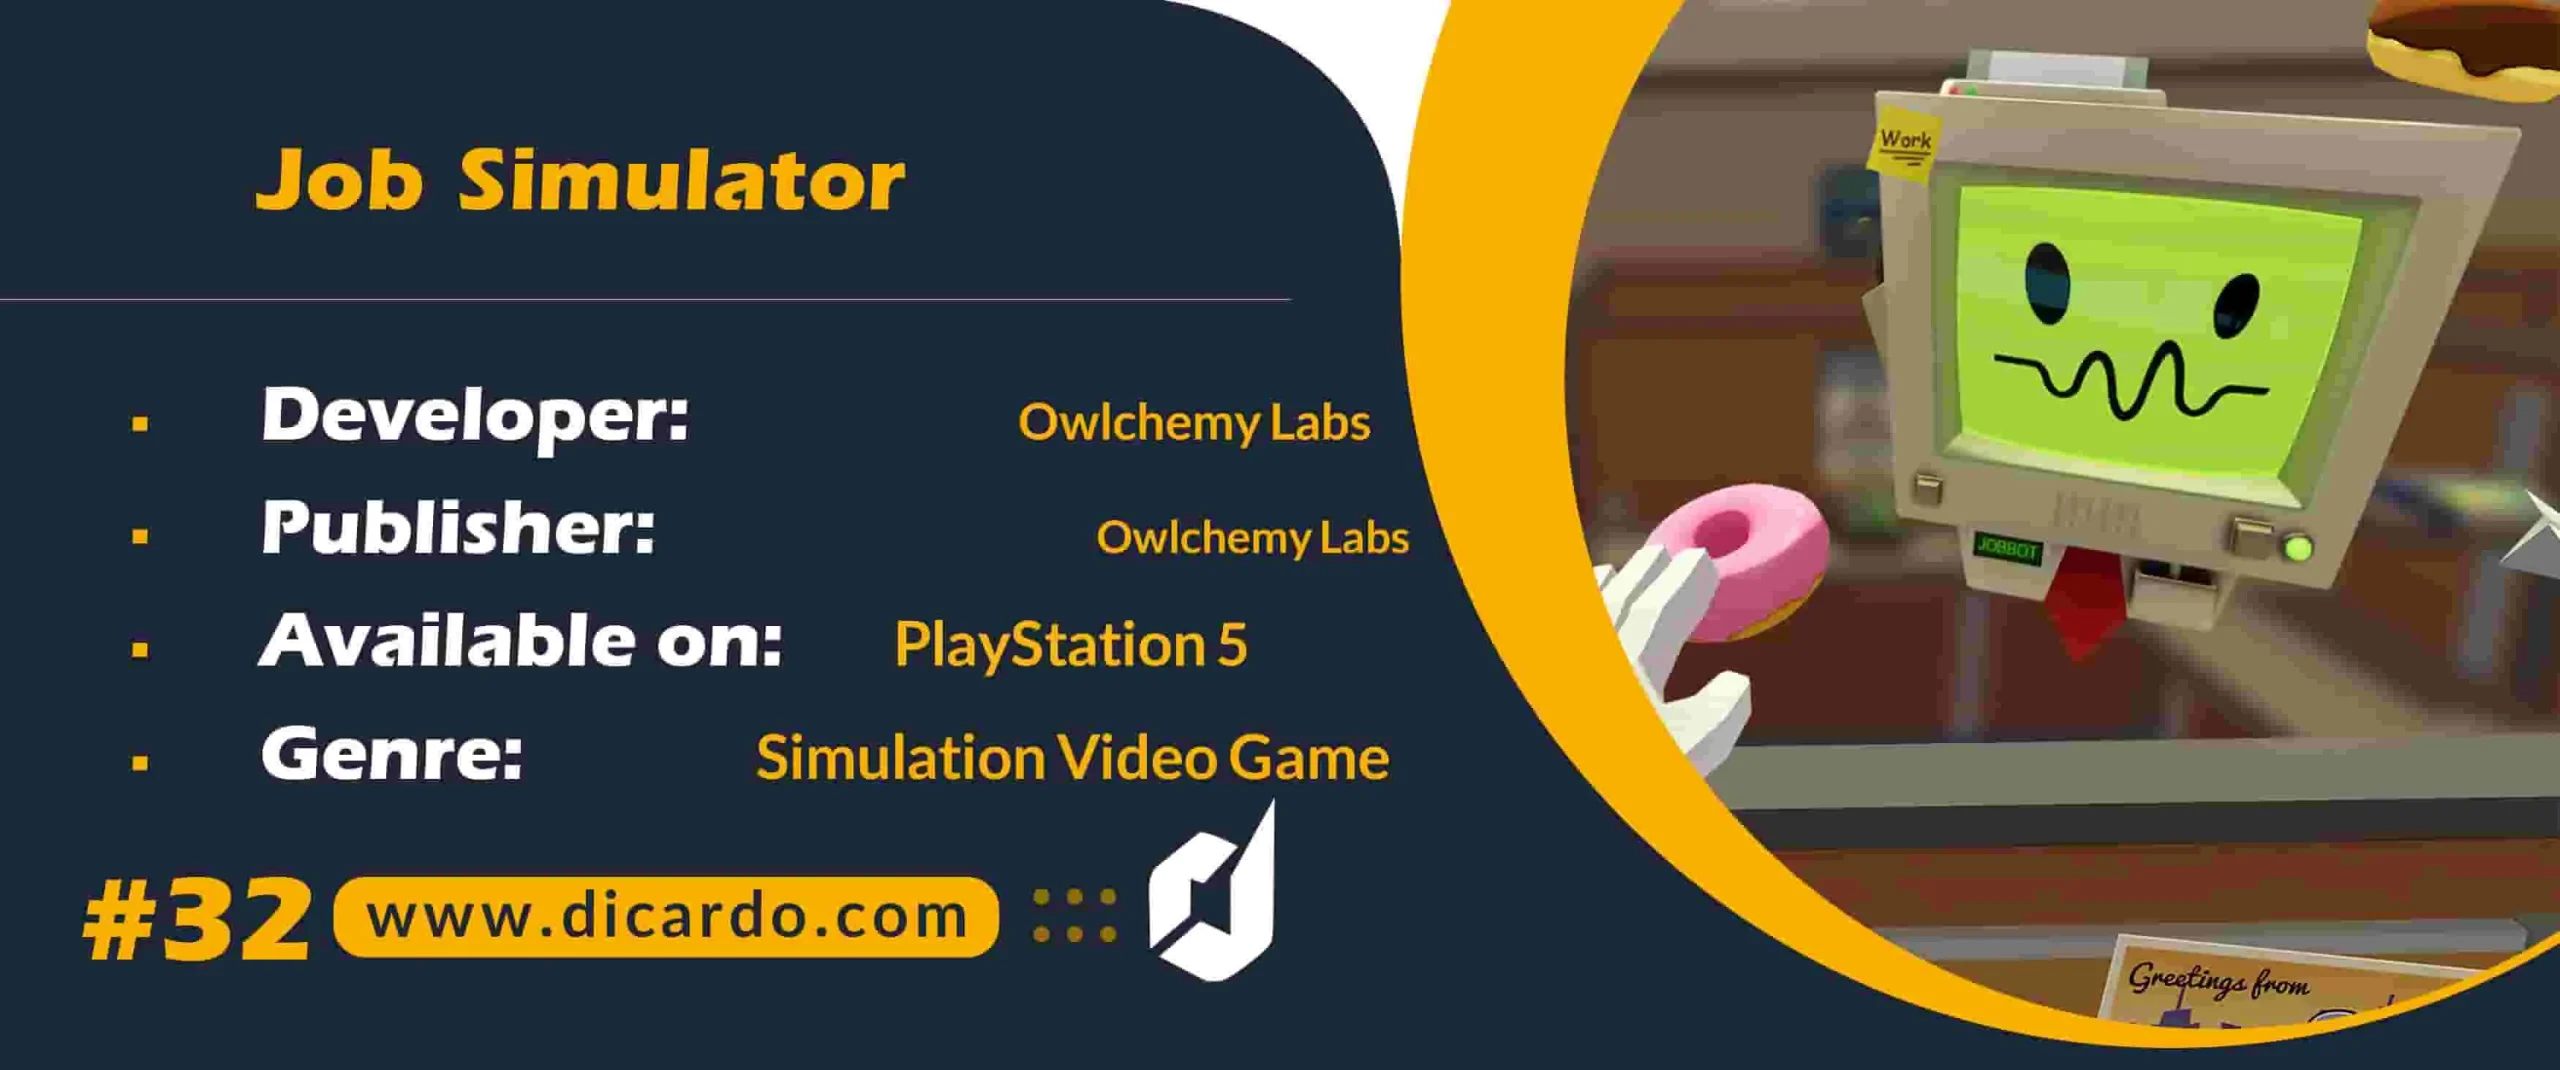 #32 جاب سیمولیشر Job Simulator از برترین بازیهای PS5 شبیه سازی